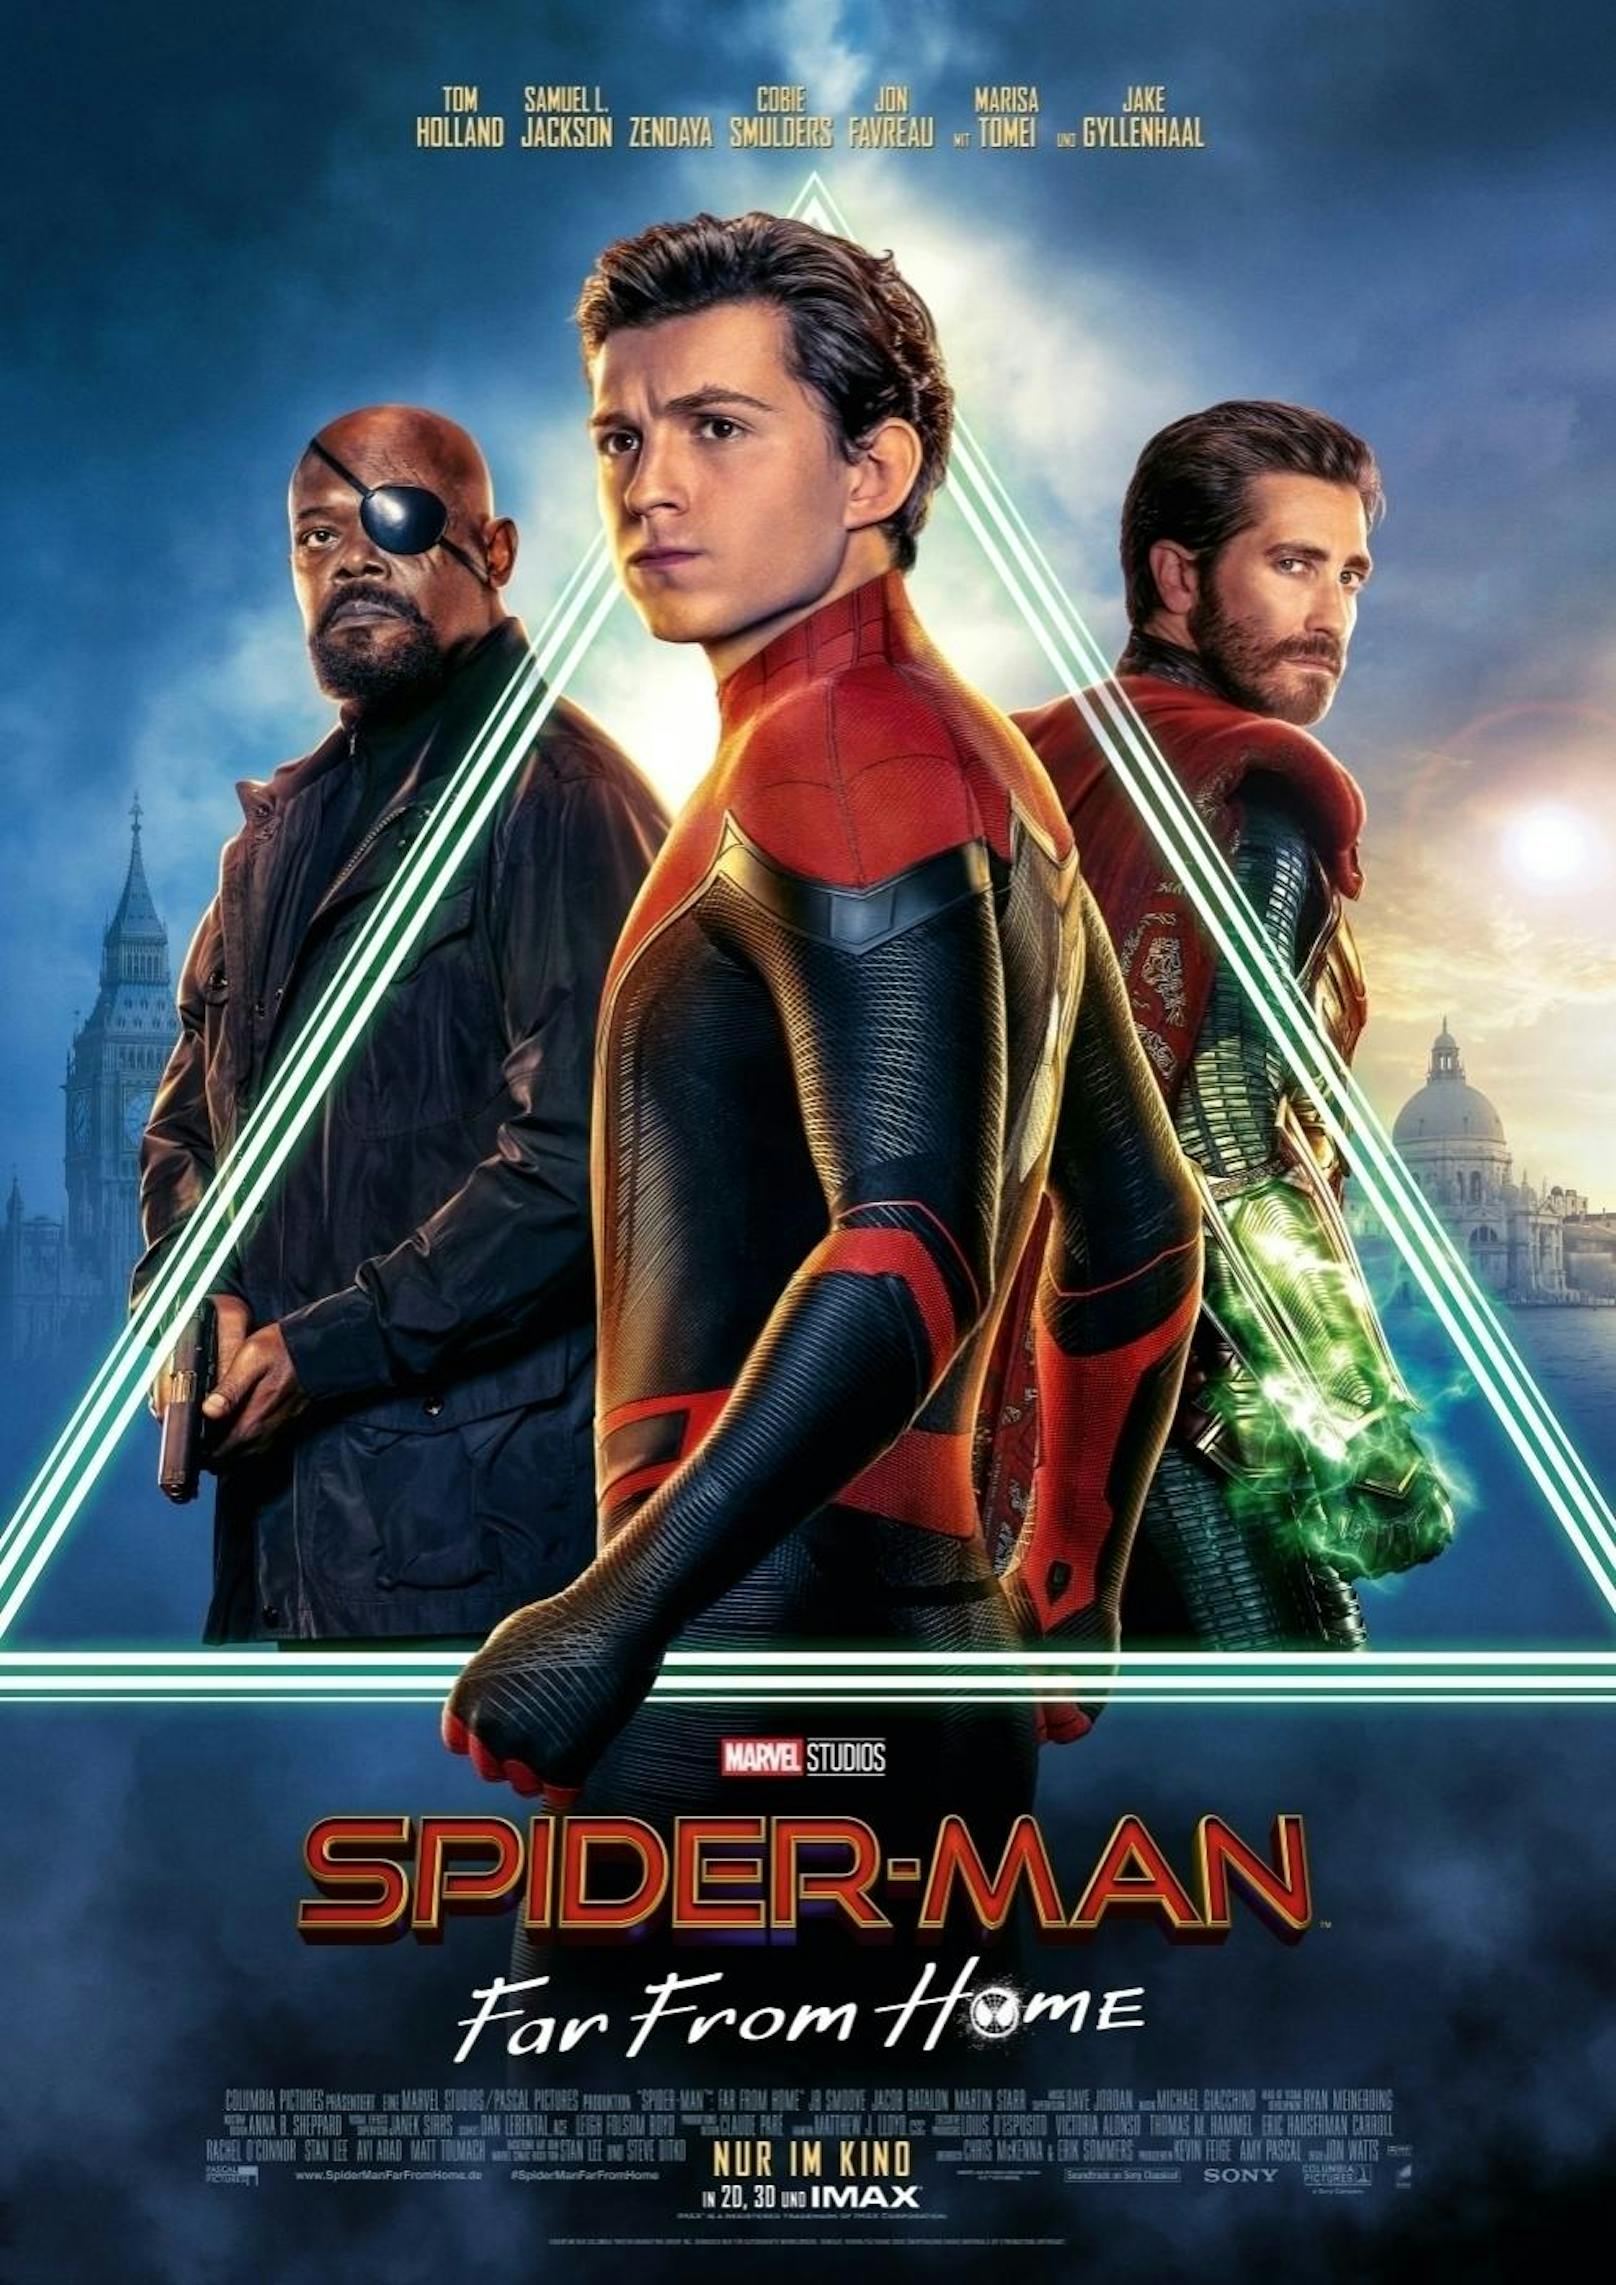 <b>Platz 3 - SPIDER-MAN: FAR FROM HOME</b>
Weltweites Einspielergebnis: 1.131.927.996 Dollar

Tom Holland bestreitet ein neues Spider-Man-Abenteuer, die Story setzt direkt nach dem Finale von "Avengers: Endgame" ein. <a href="https://www.heute.at/s/spider-man-far-from-home-filmkritik-review-trailer-52468850">Hier geht's zur Review von "Spider-Man: Far From Home"</a>